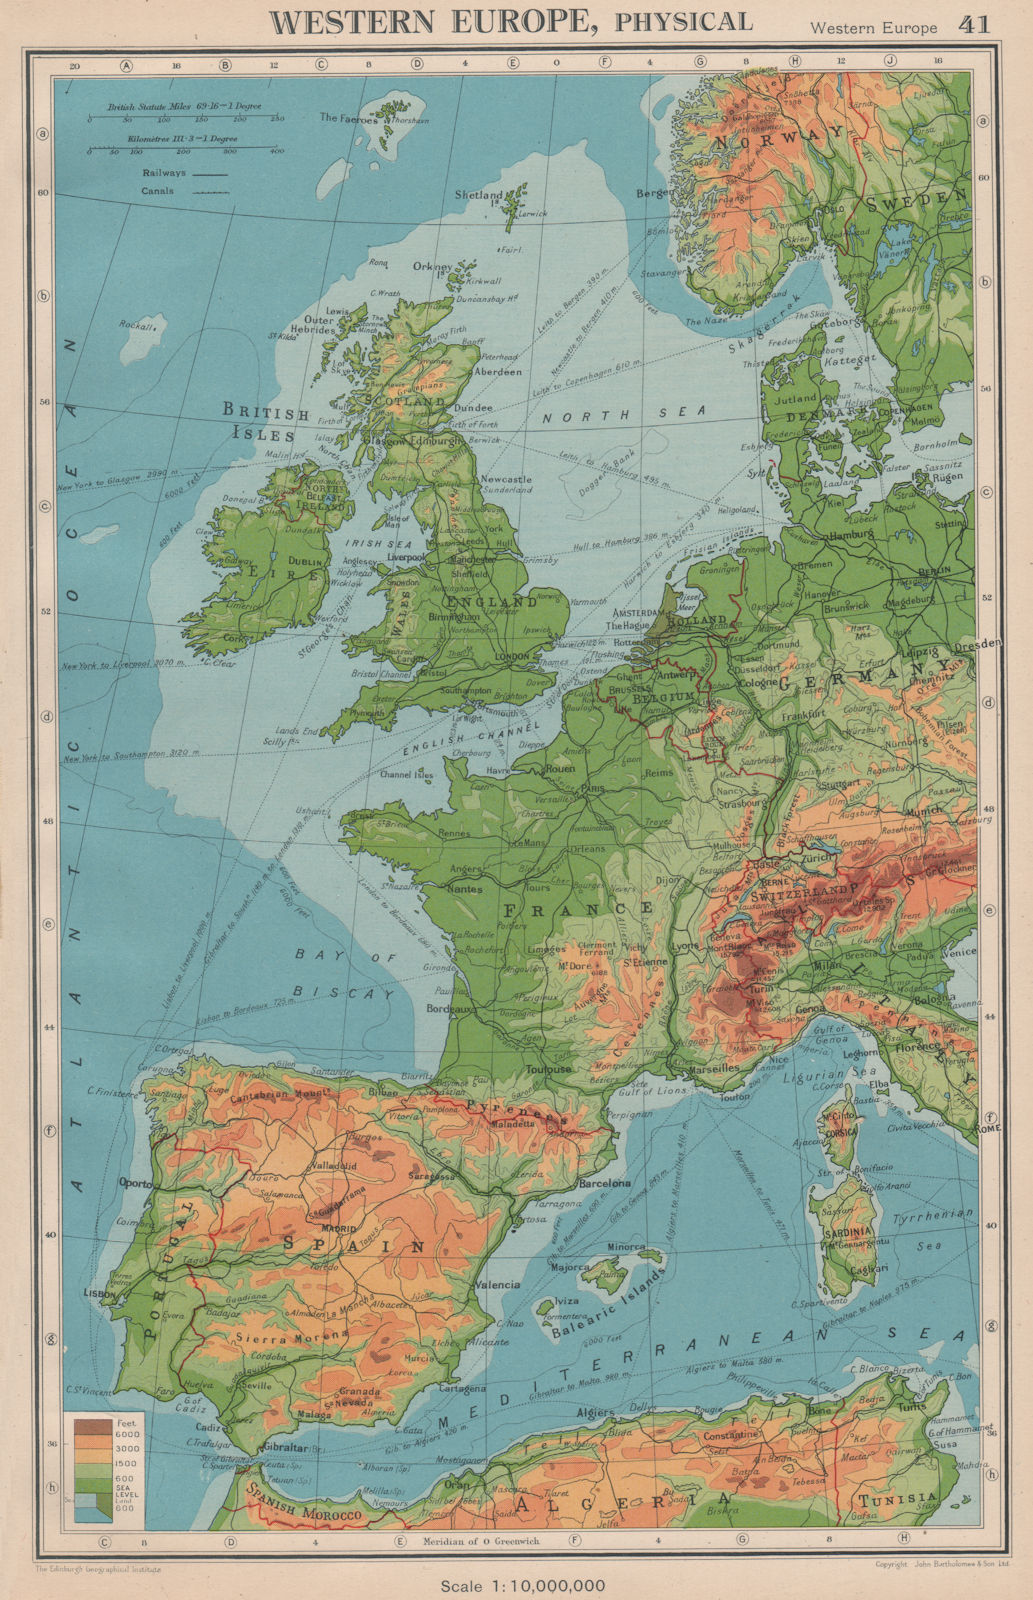 Associate Product WESTERN EUROPE. Physical & main railways. BARTHOLOMEW 1944 old vintage map